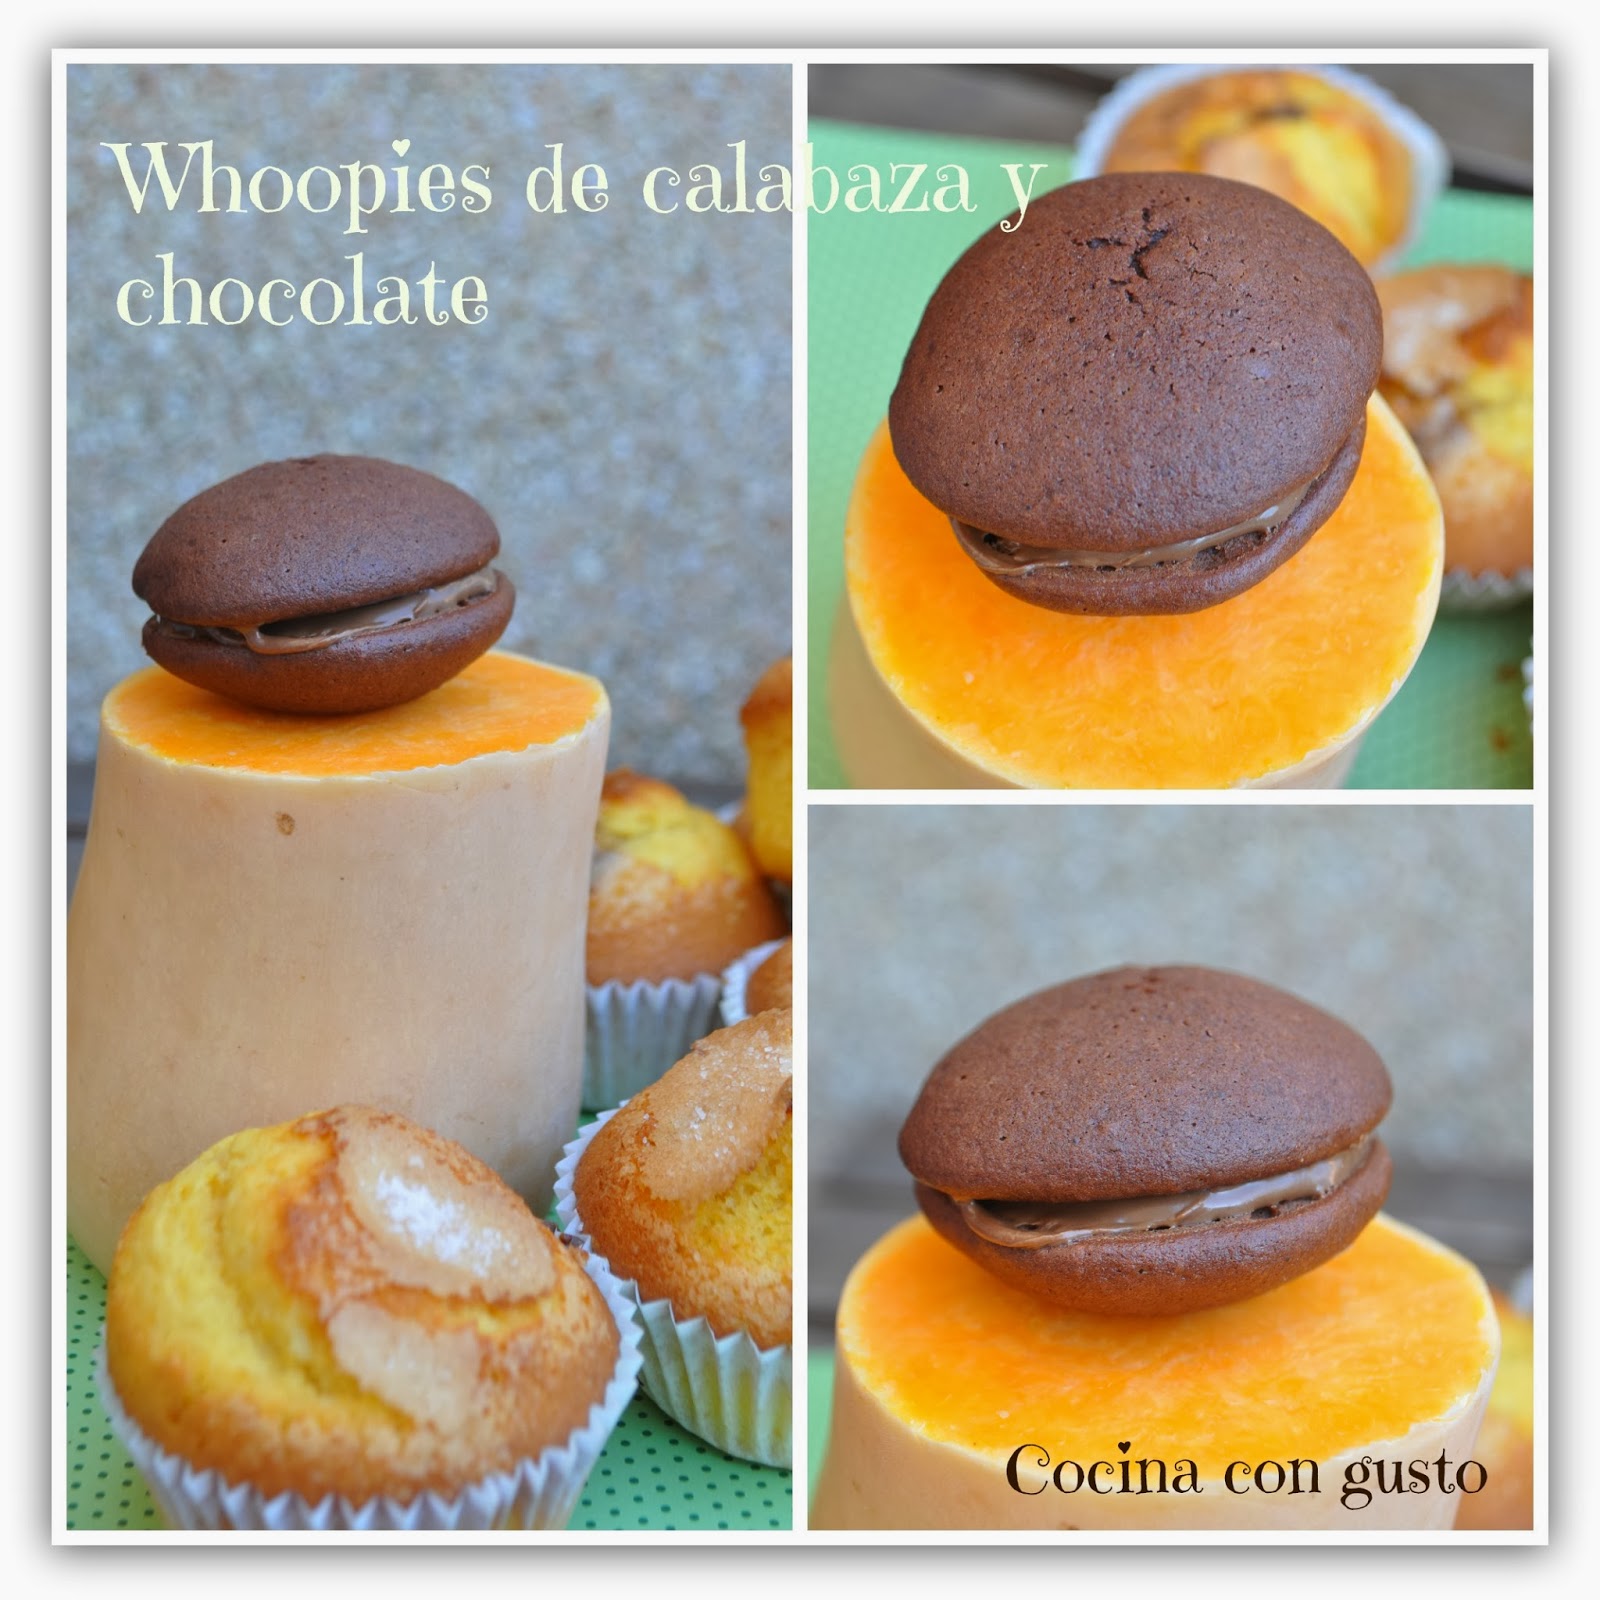 Whoopies De Calabaza Y Chocolate
